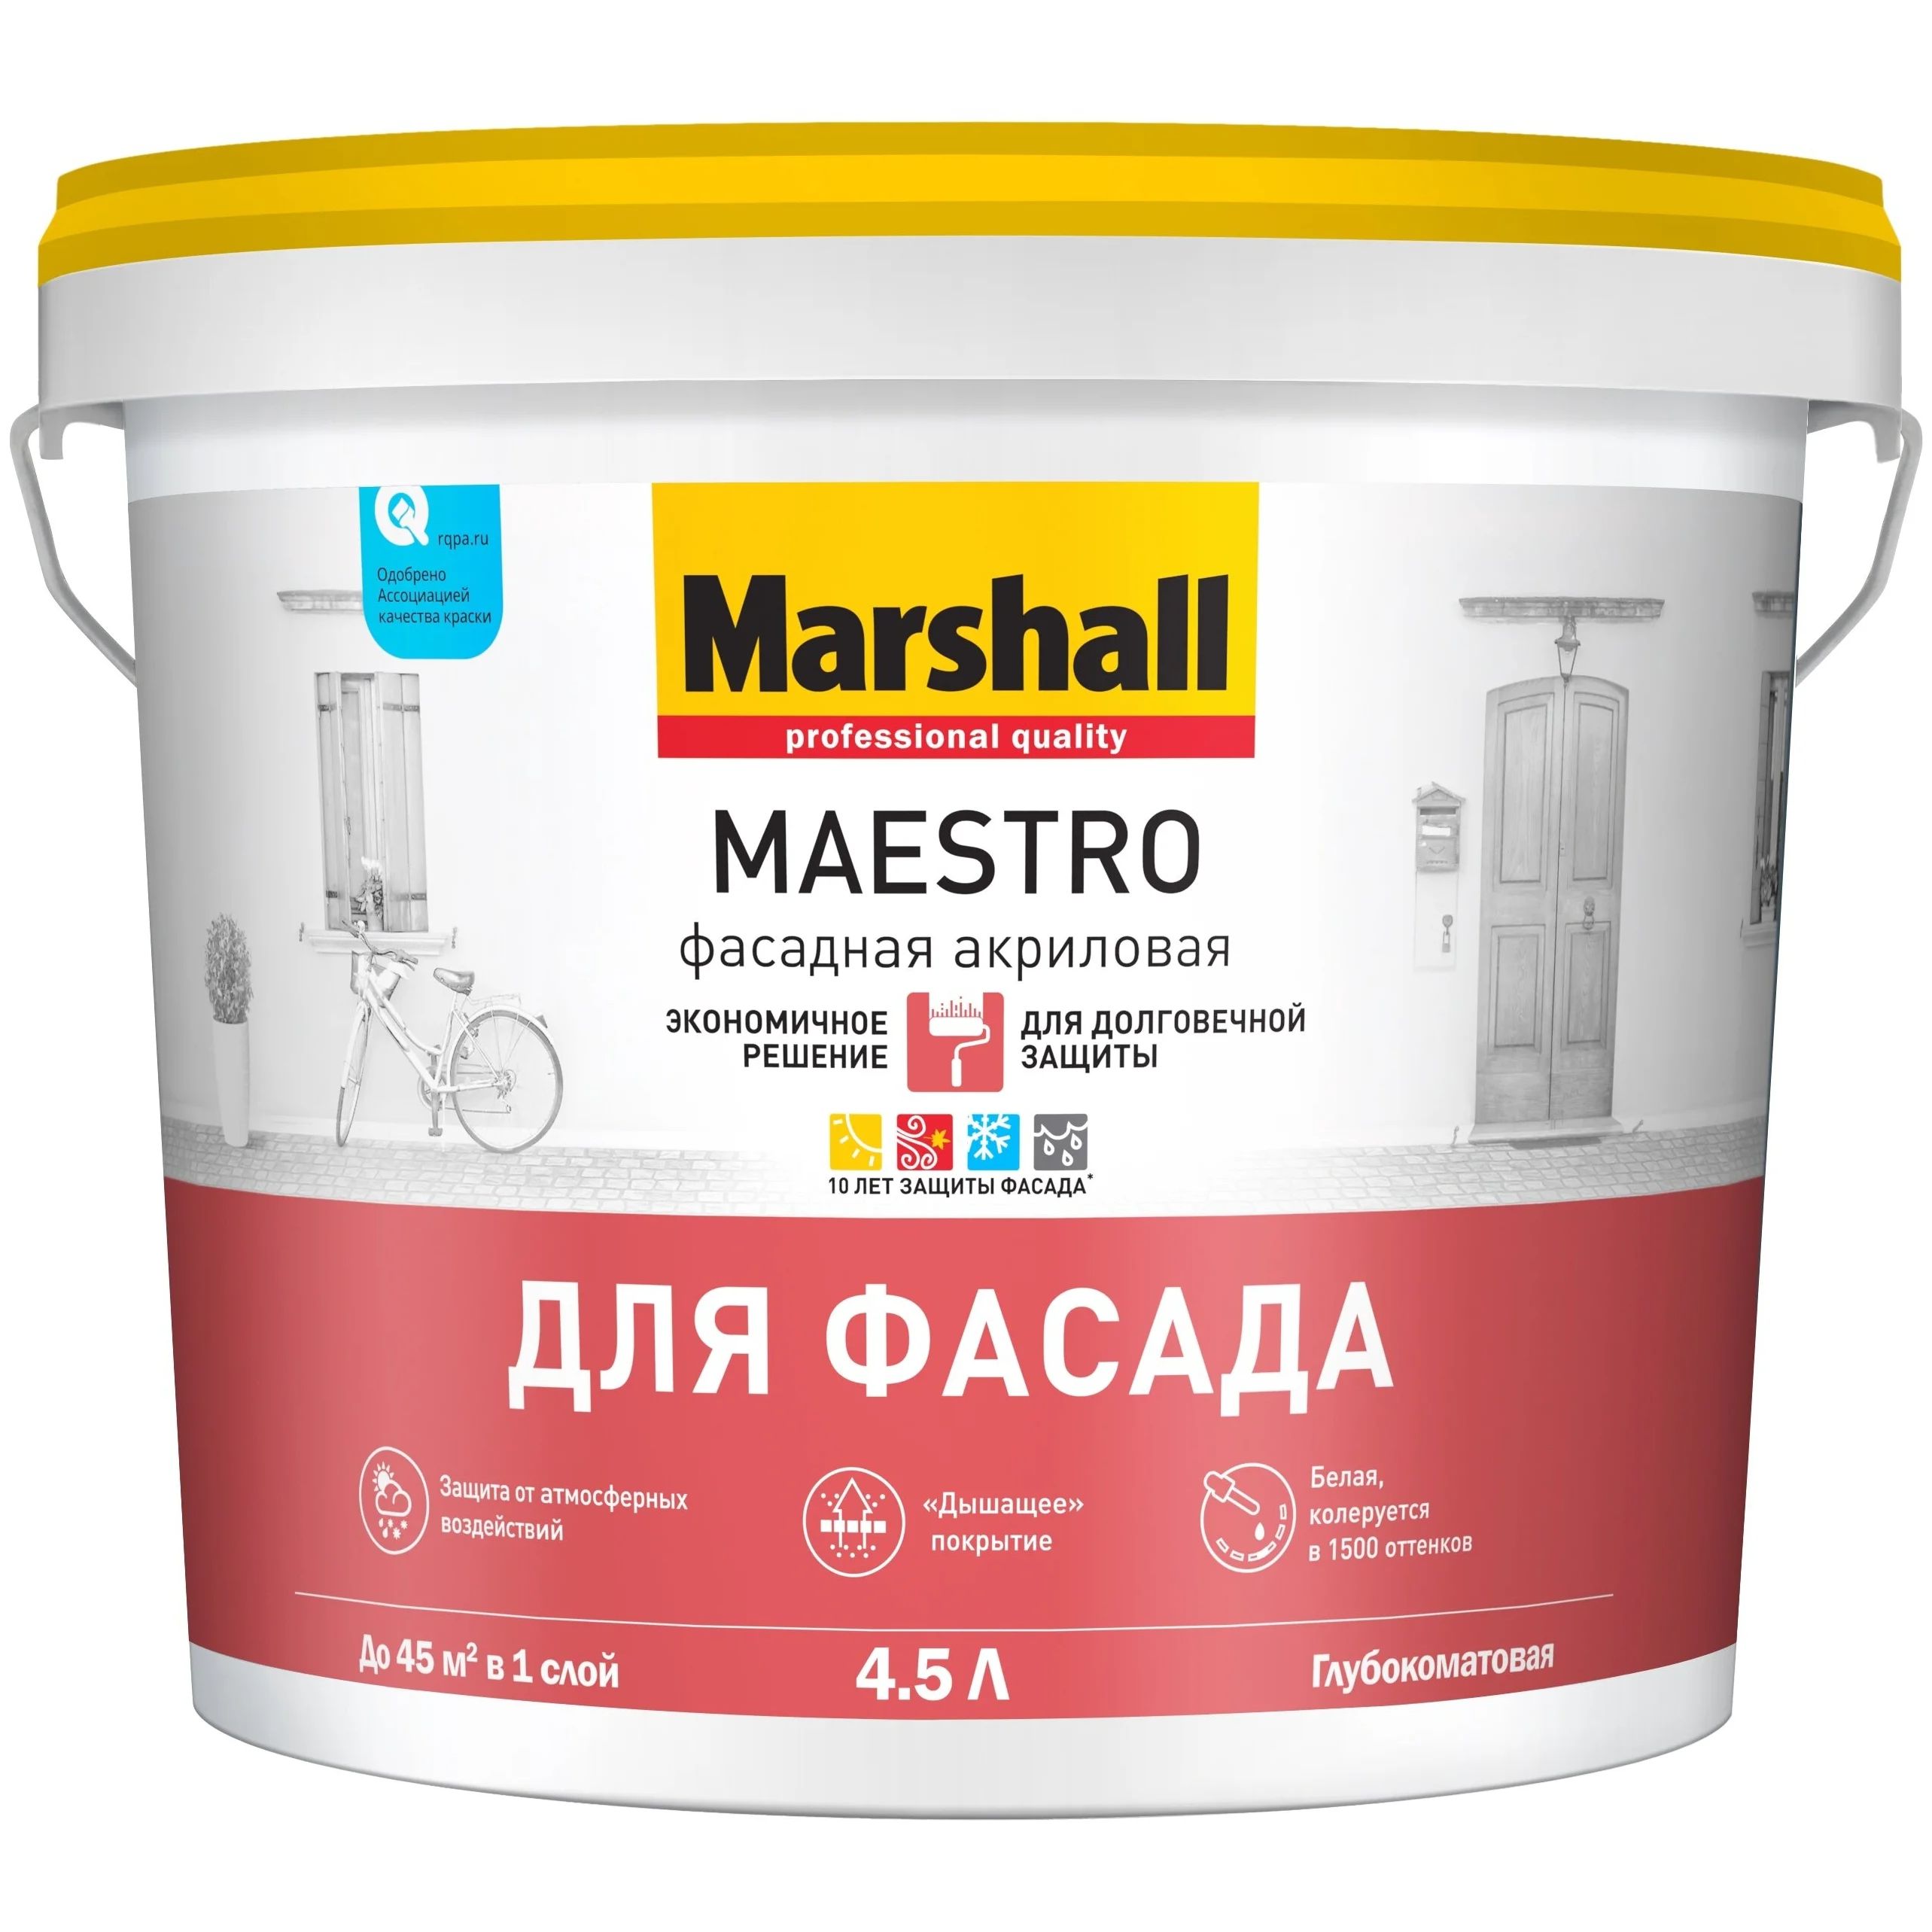 краска marshall maestro фасадная акриловая глубокоматовая bc 2 5 л Краска Marshall Maestro фасадная акриловая, глубокоматовая, BC, 4,5 л